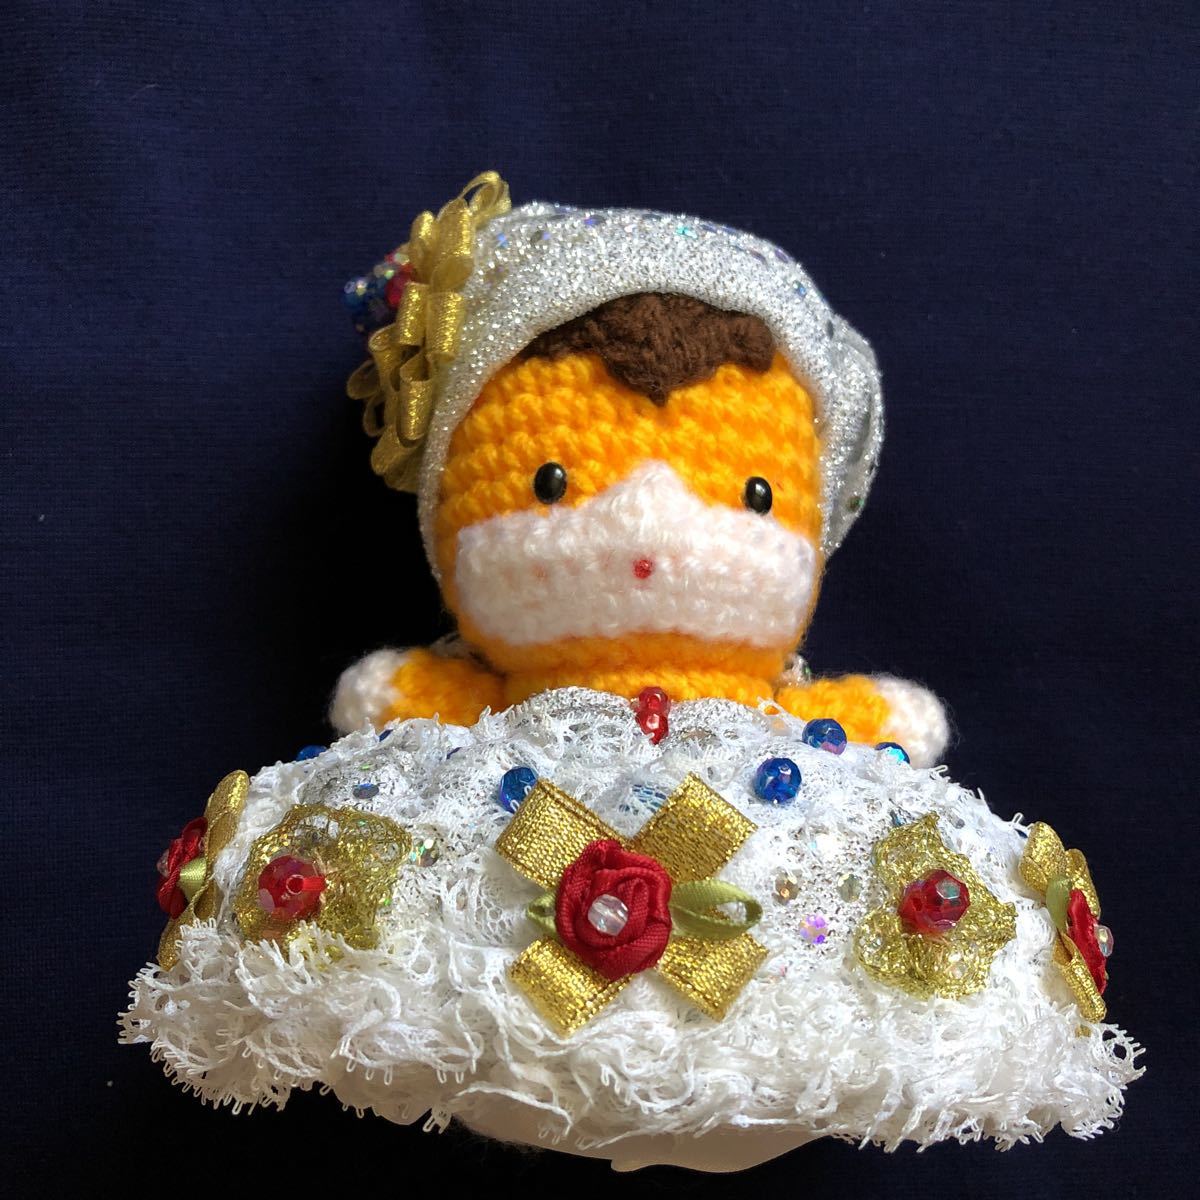 Robe de poupée au crochet Gunma-chan extrêmement rare, animal en peluche fait à la main, Mascotte de la préfecture de Gunma, jouet, jeu, jouet en peluche, Amigurumi